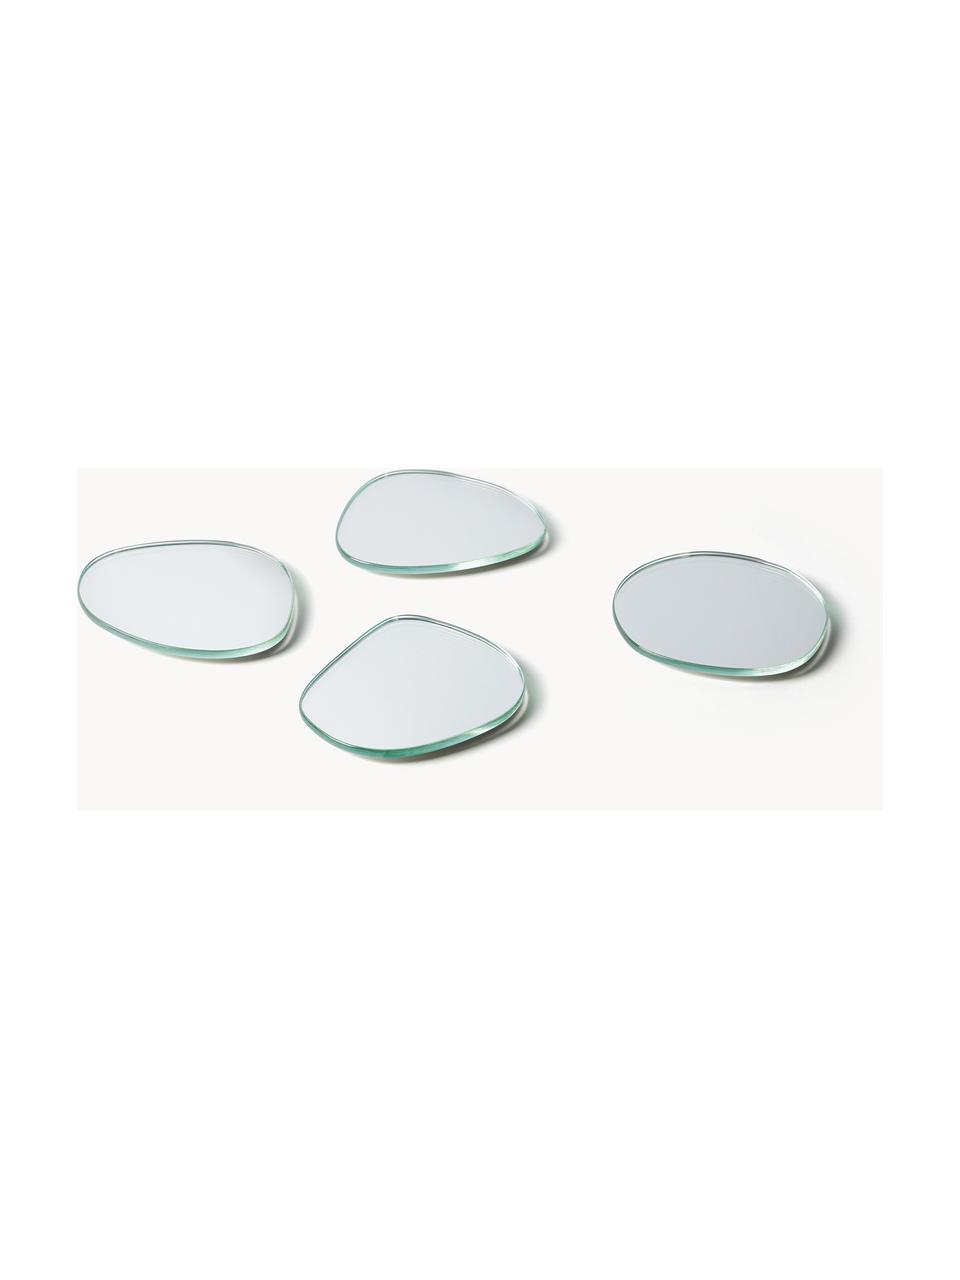 Asymmetrische Untersetzer Lio, 4er-Set, Glas, Silberfarben, verspiegelt, B 11 x L 11 cm